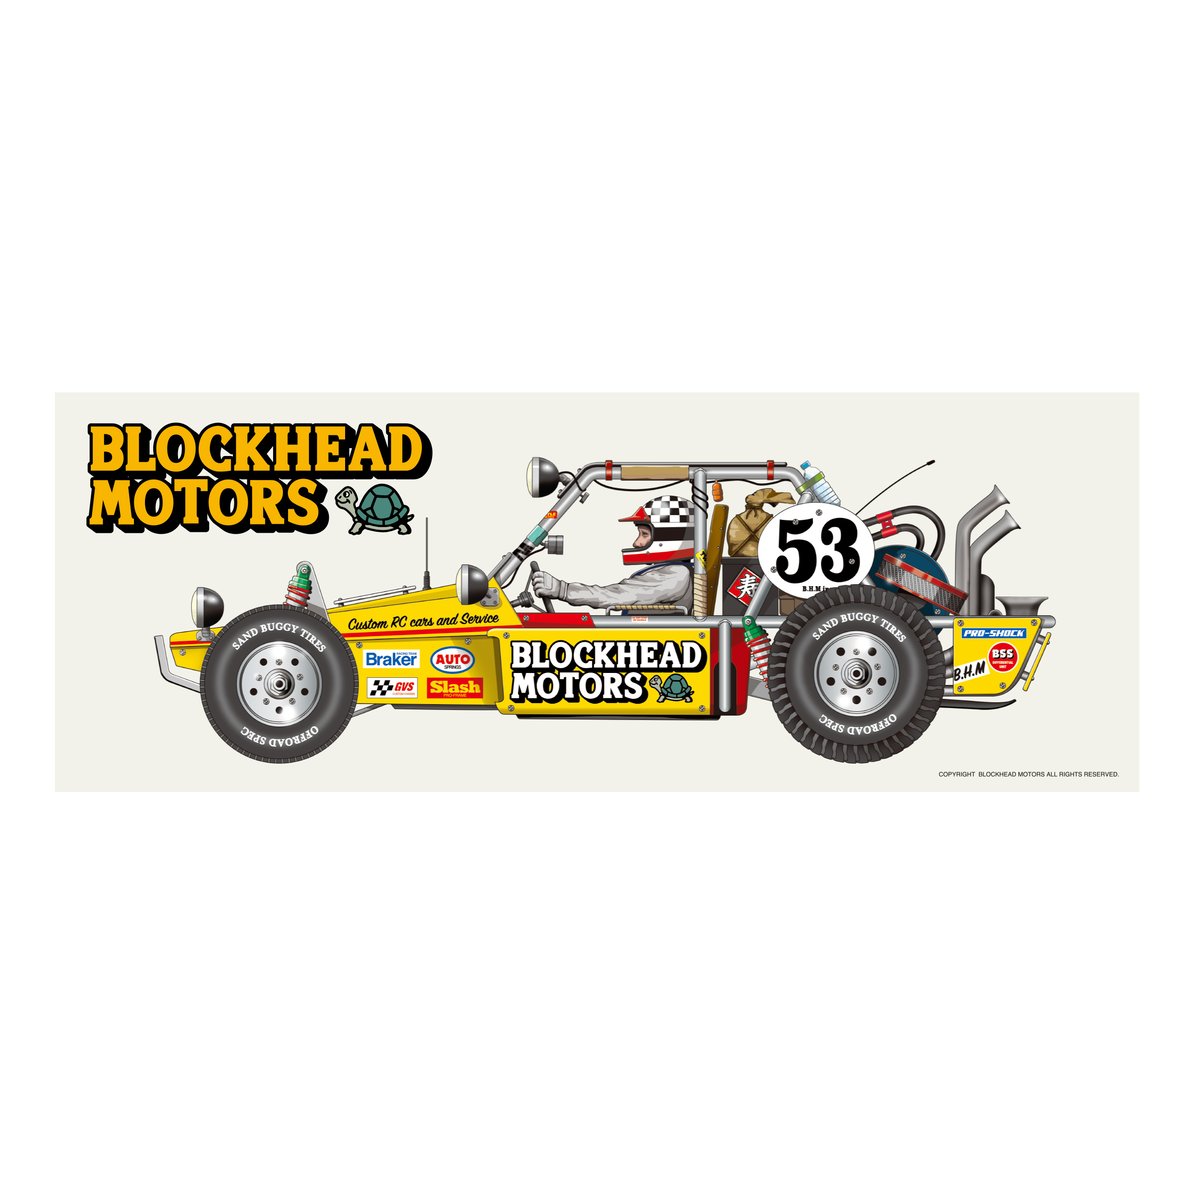 ビンテージバギーステッカー | BLOCKHEAD MOTORS